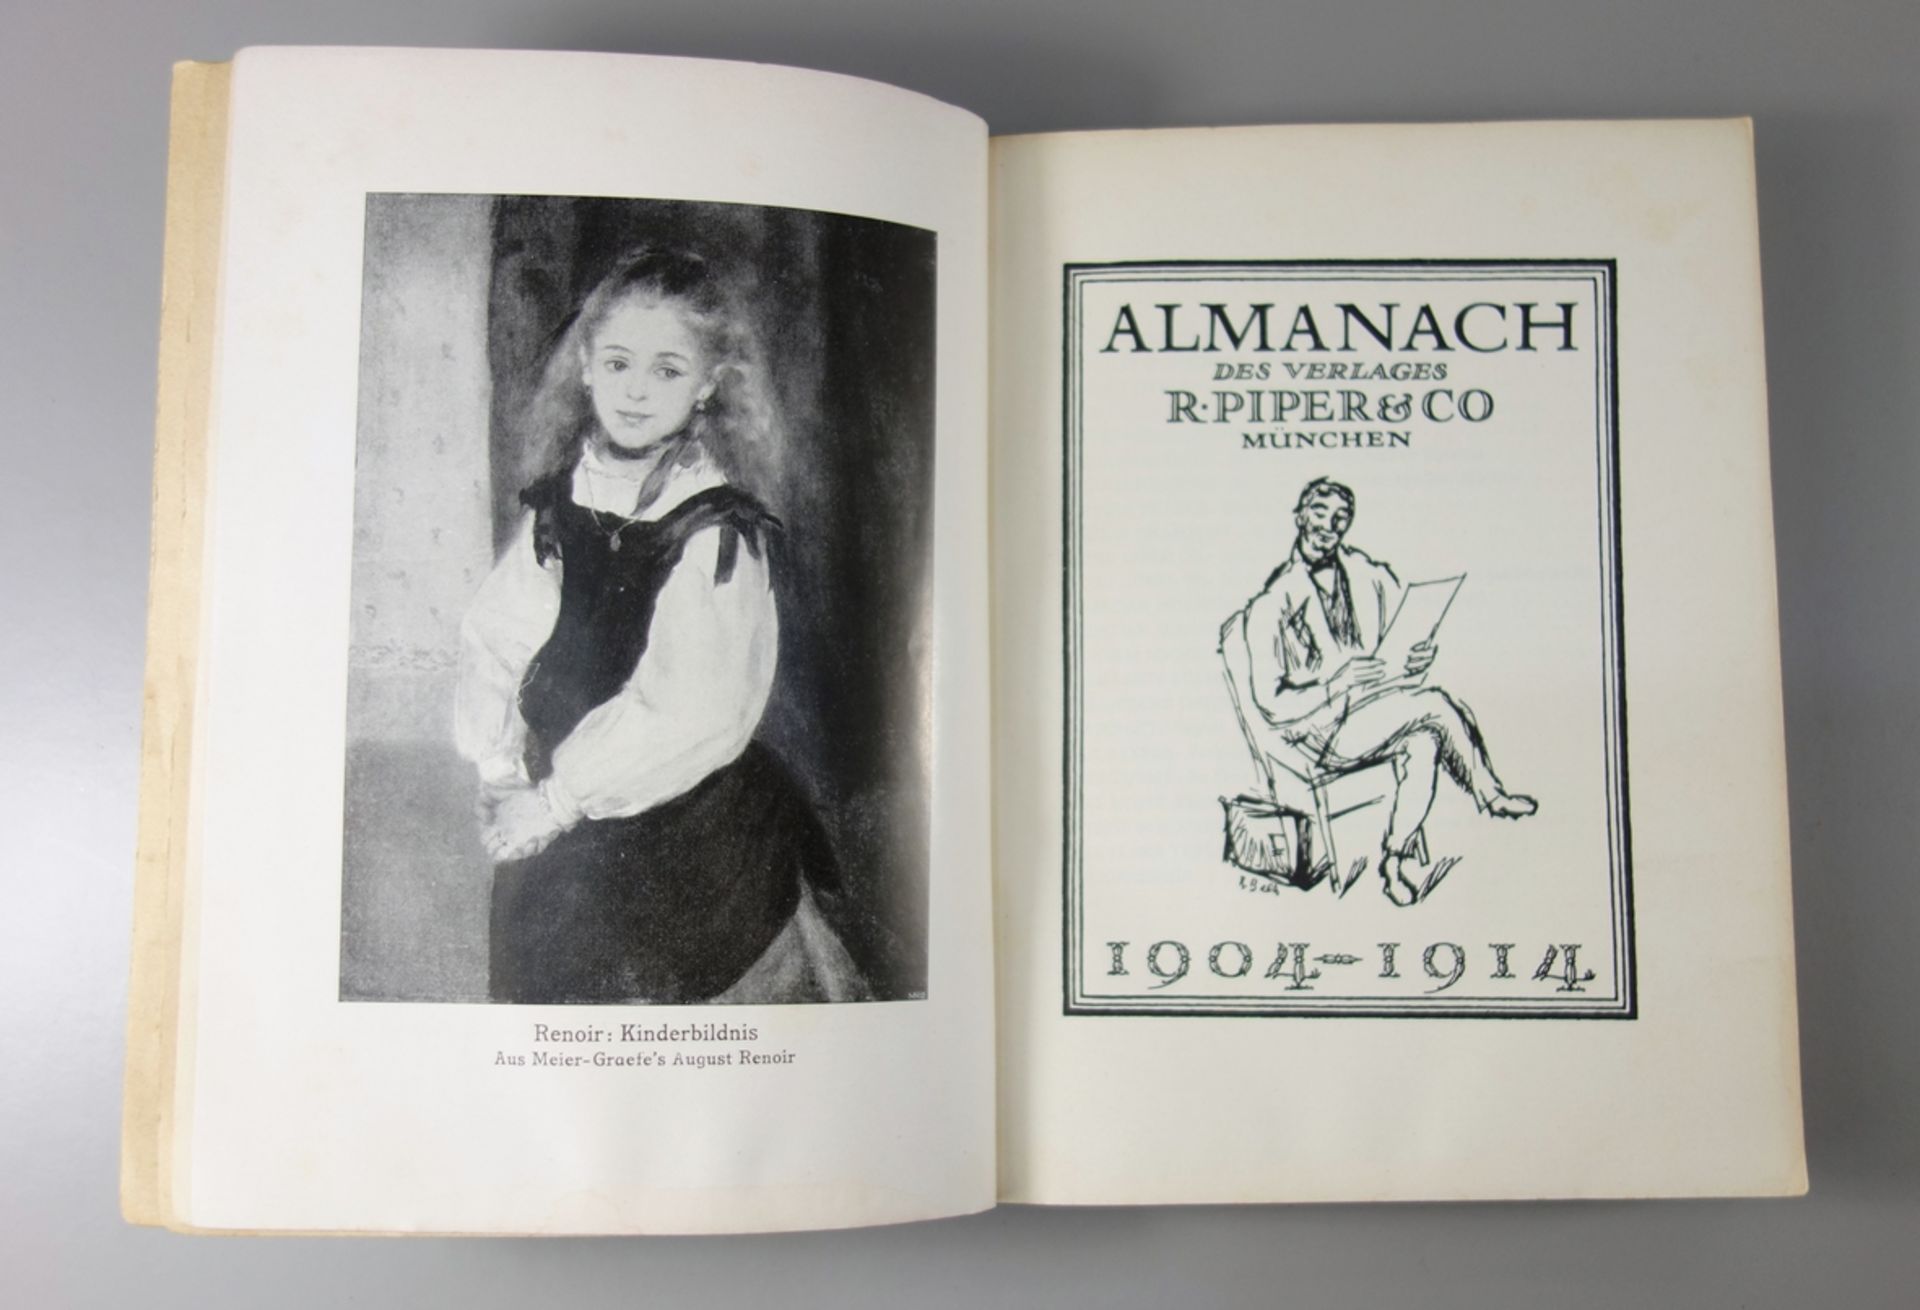 Almanach des Verlages R.Piper&Co, München, 1904-1914, 29 Bildbeigaben, u.a. von Paul Cézanne, - Bild 3 aus 3